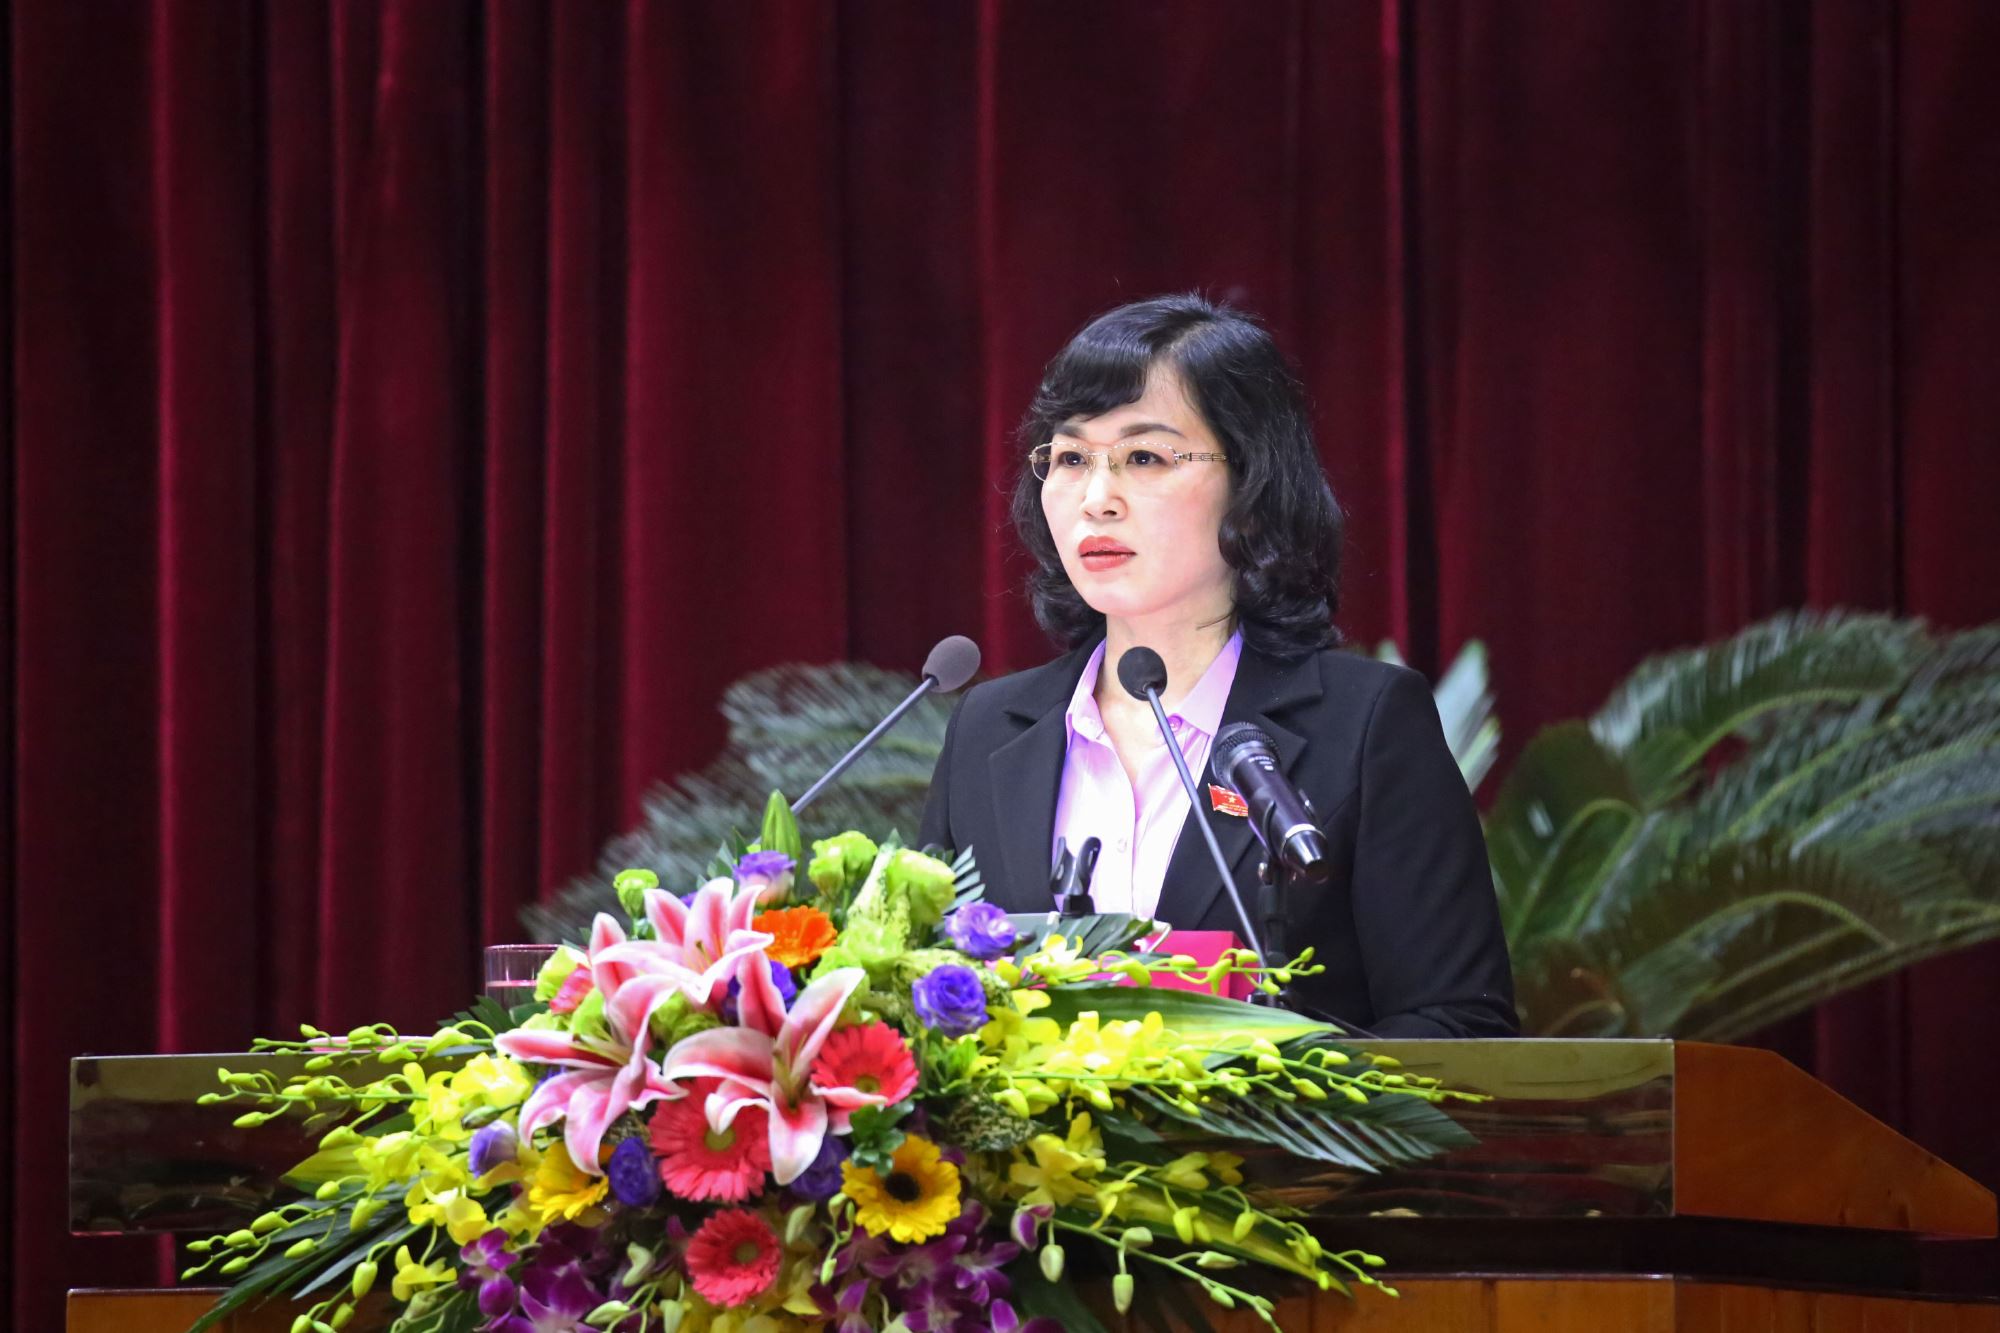 Chân dung nữ Phó Bí thư Tỉnh ủy Quảng Ninh 48 tuổi - Ảnh 1.